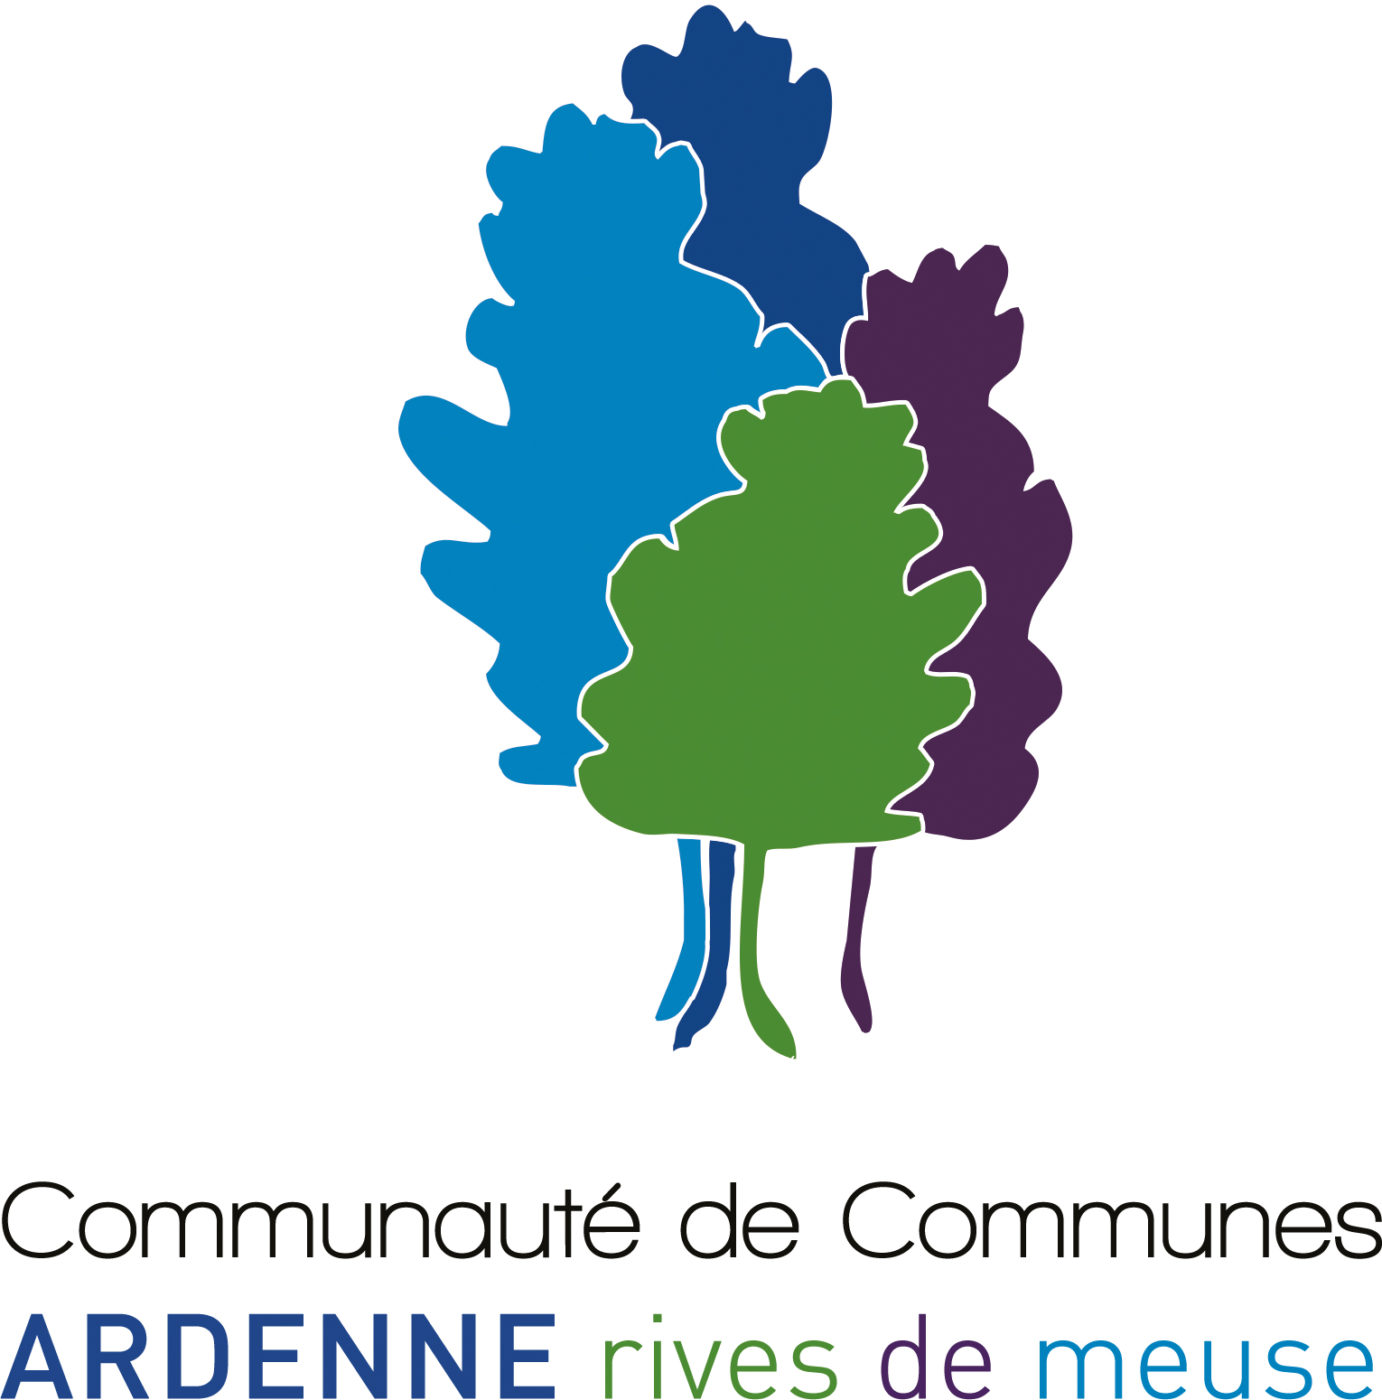 Communauté de Commune Ardenne rives de Meuse